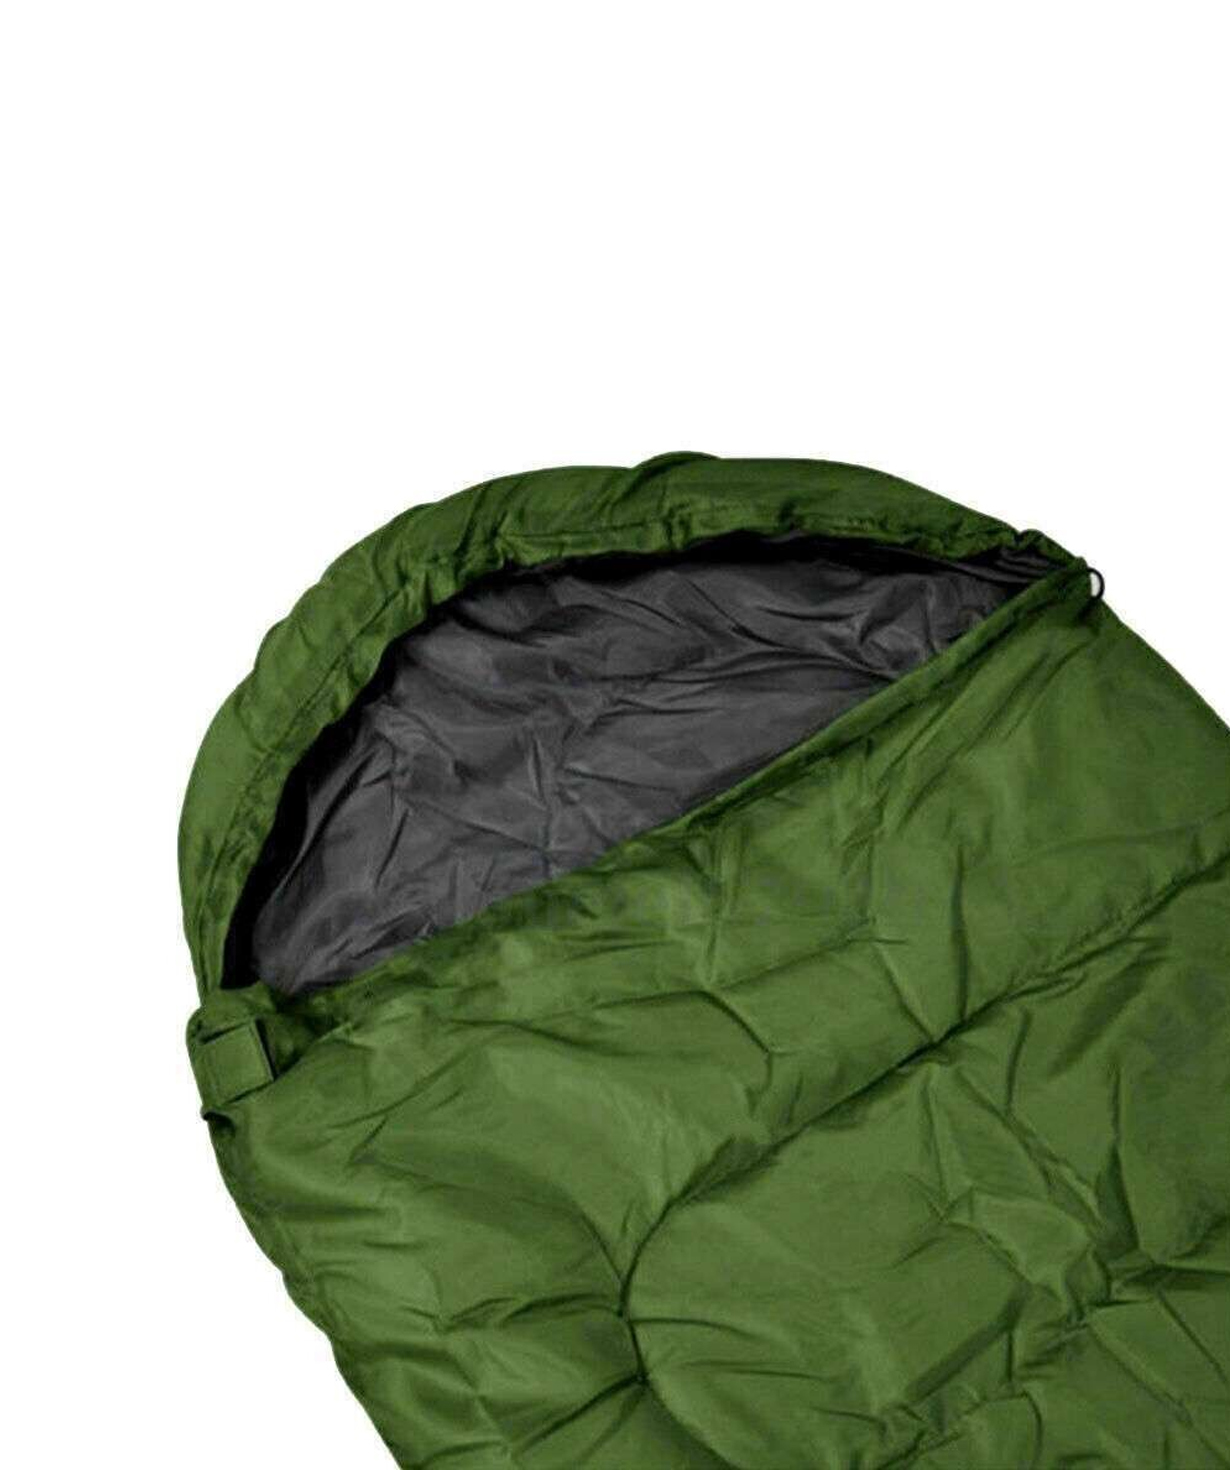 Sleeping bag «Mabsport» green, -5 +10°С